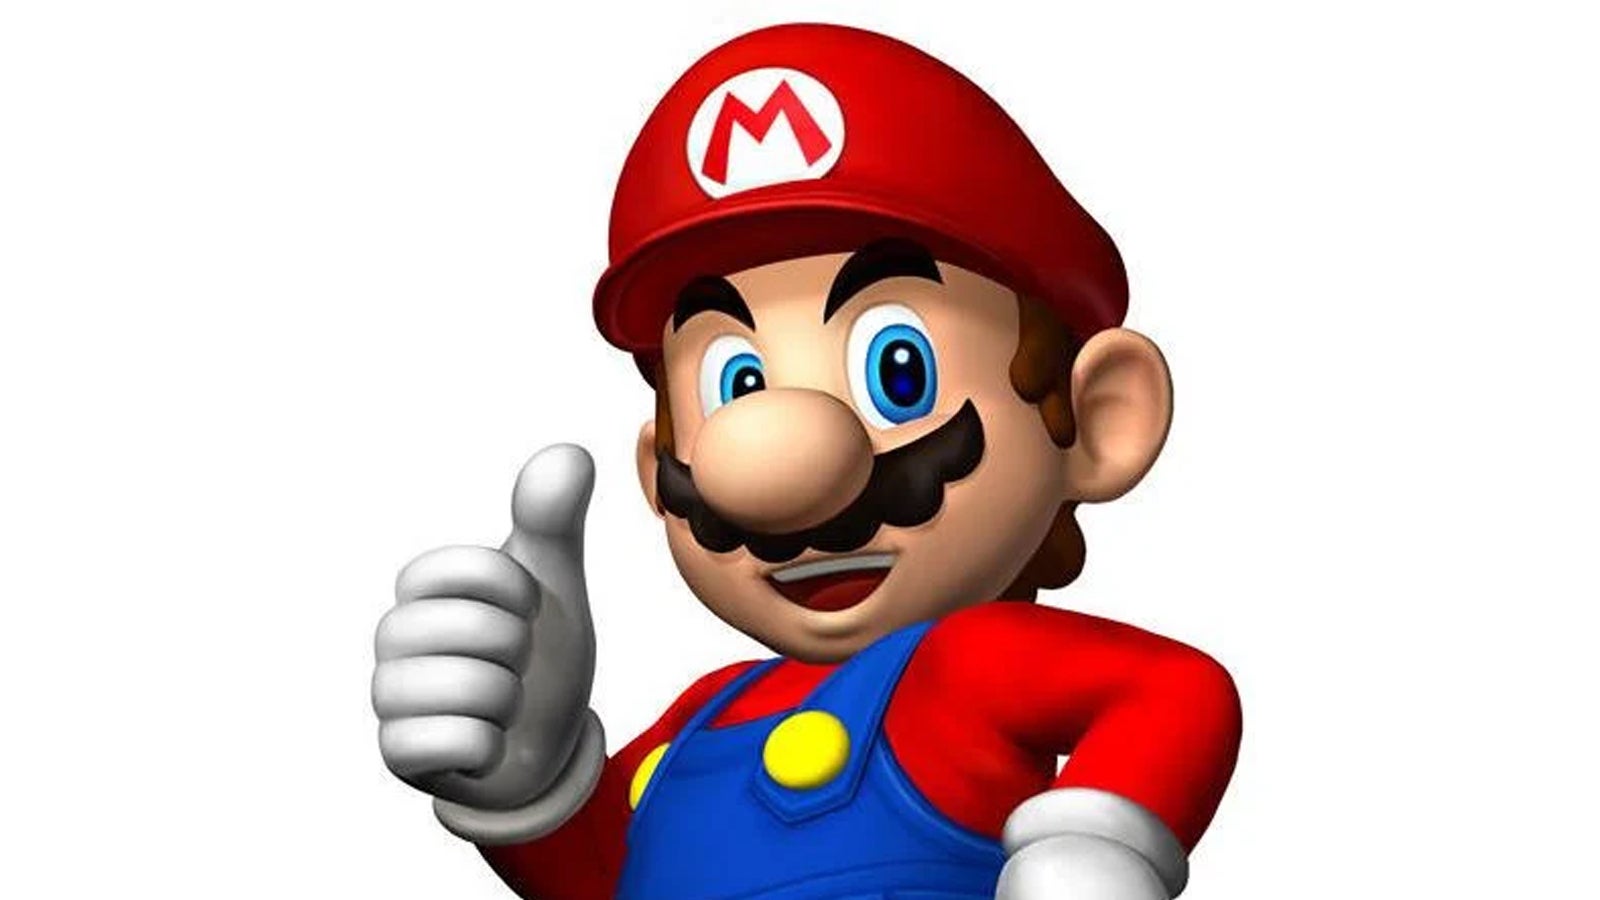 Mario gives a thumbs up.